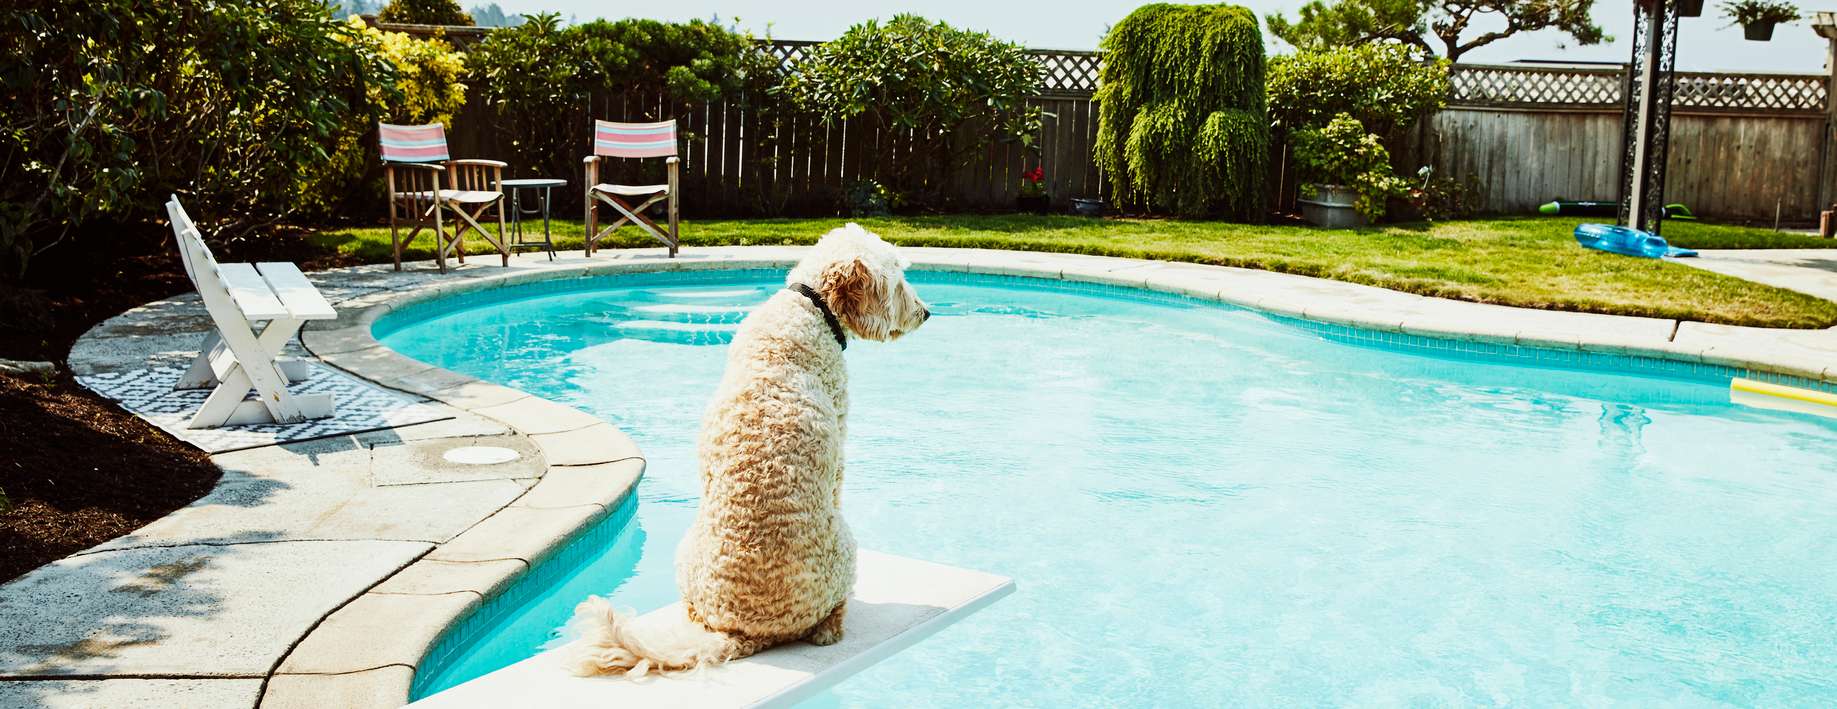 Hund sitzt auf Sprungbrett am Pool und schaut in die Ferne